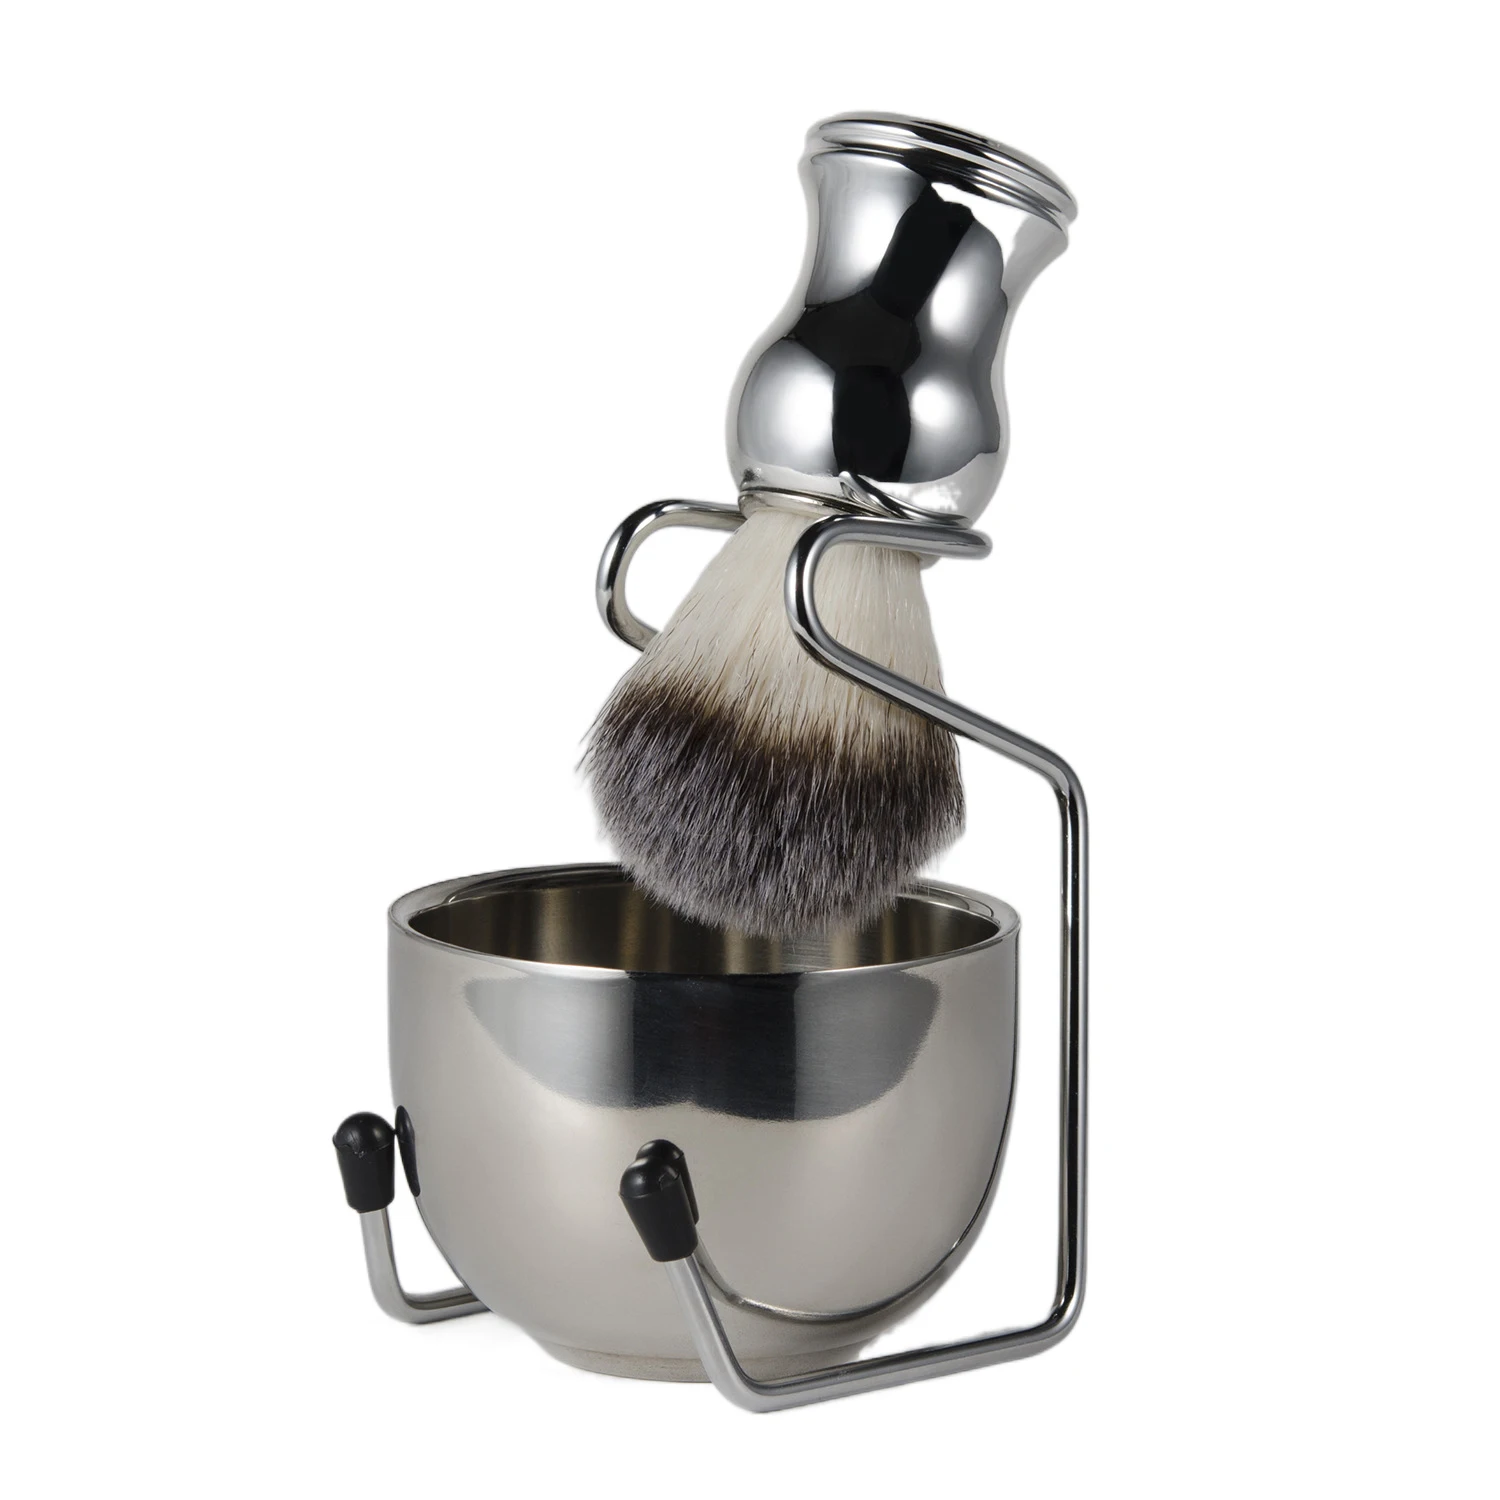 Shaving Brush Set ,3 PCS Shaving Kit, Nylon Brush With Stainless Steel Shaving Bowl and Brush Stand,Wet Shaving Tool For Men